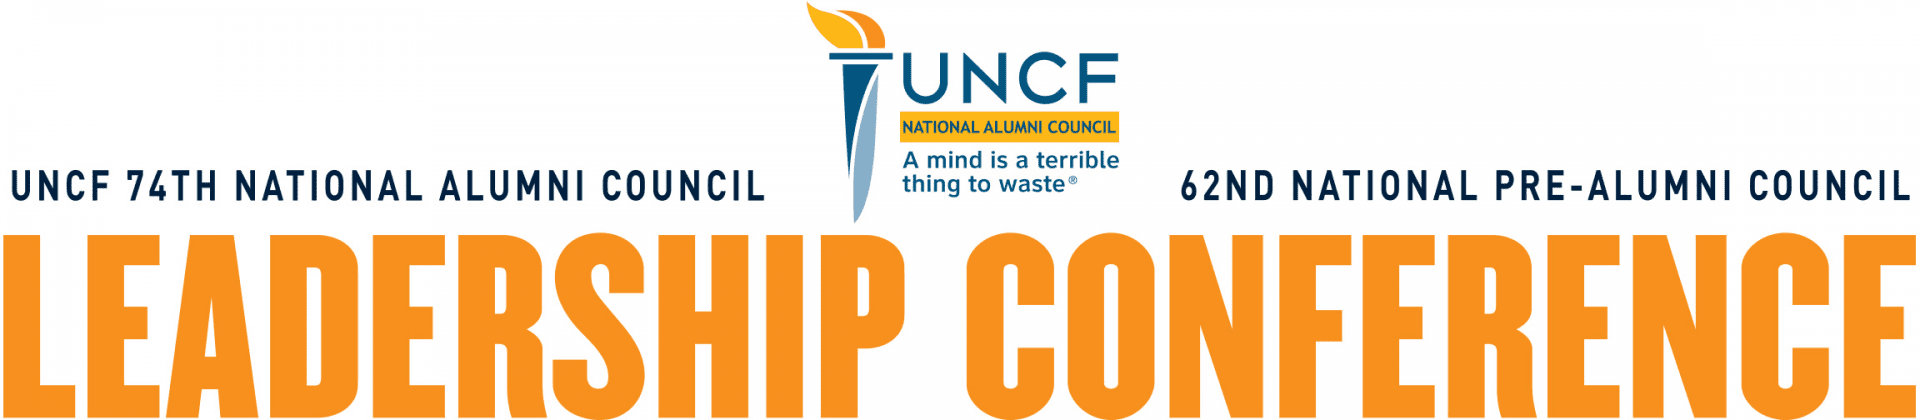 UNCF Leadership Conference banner